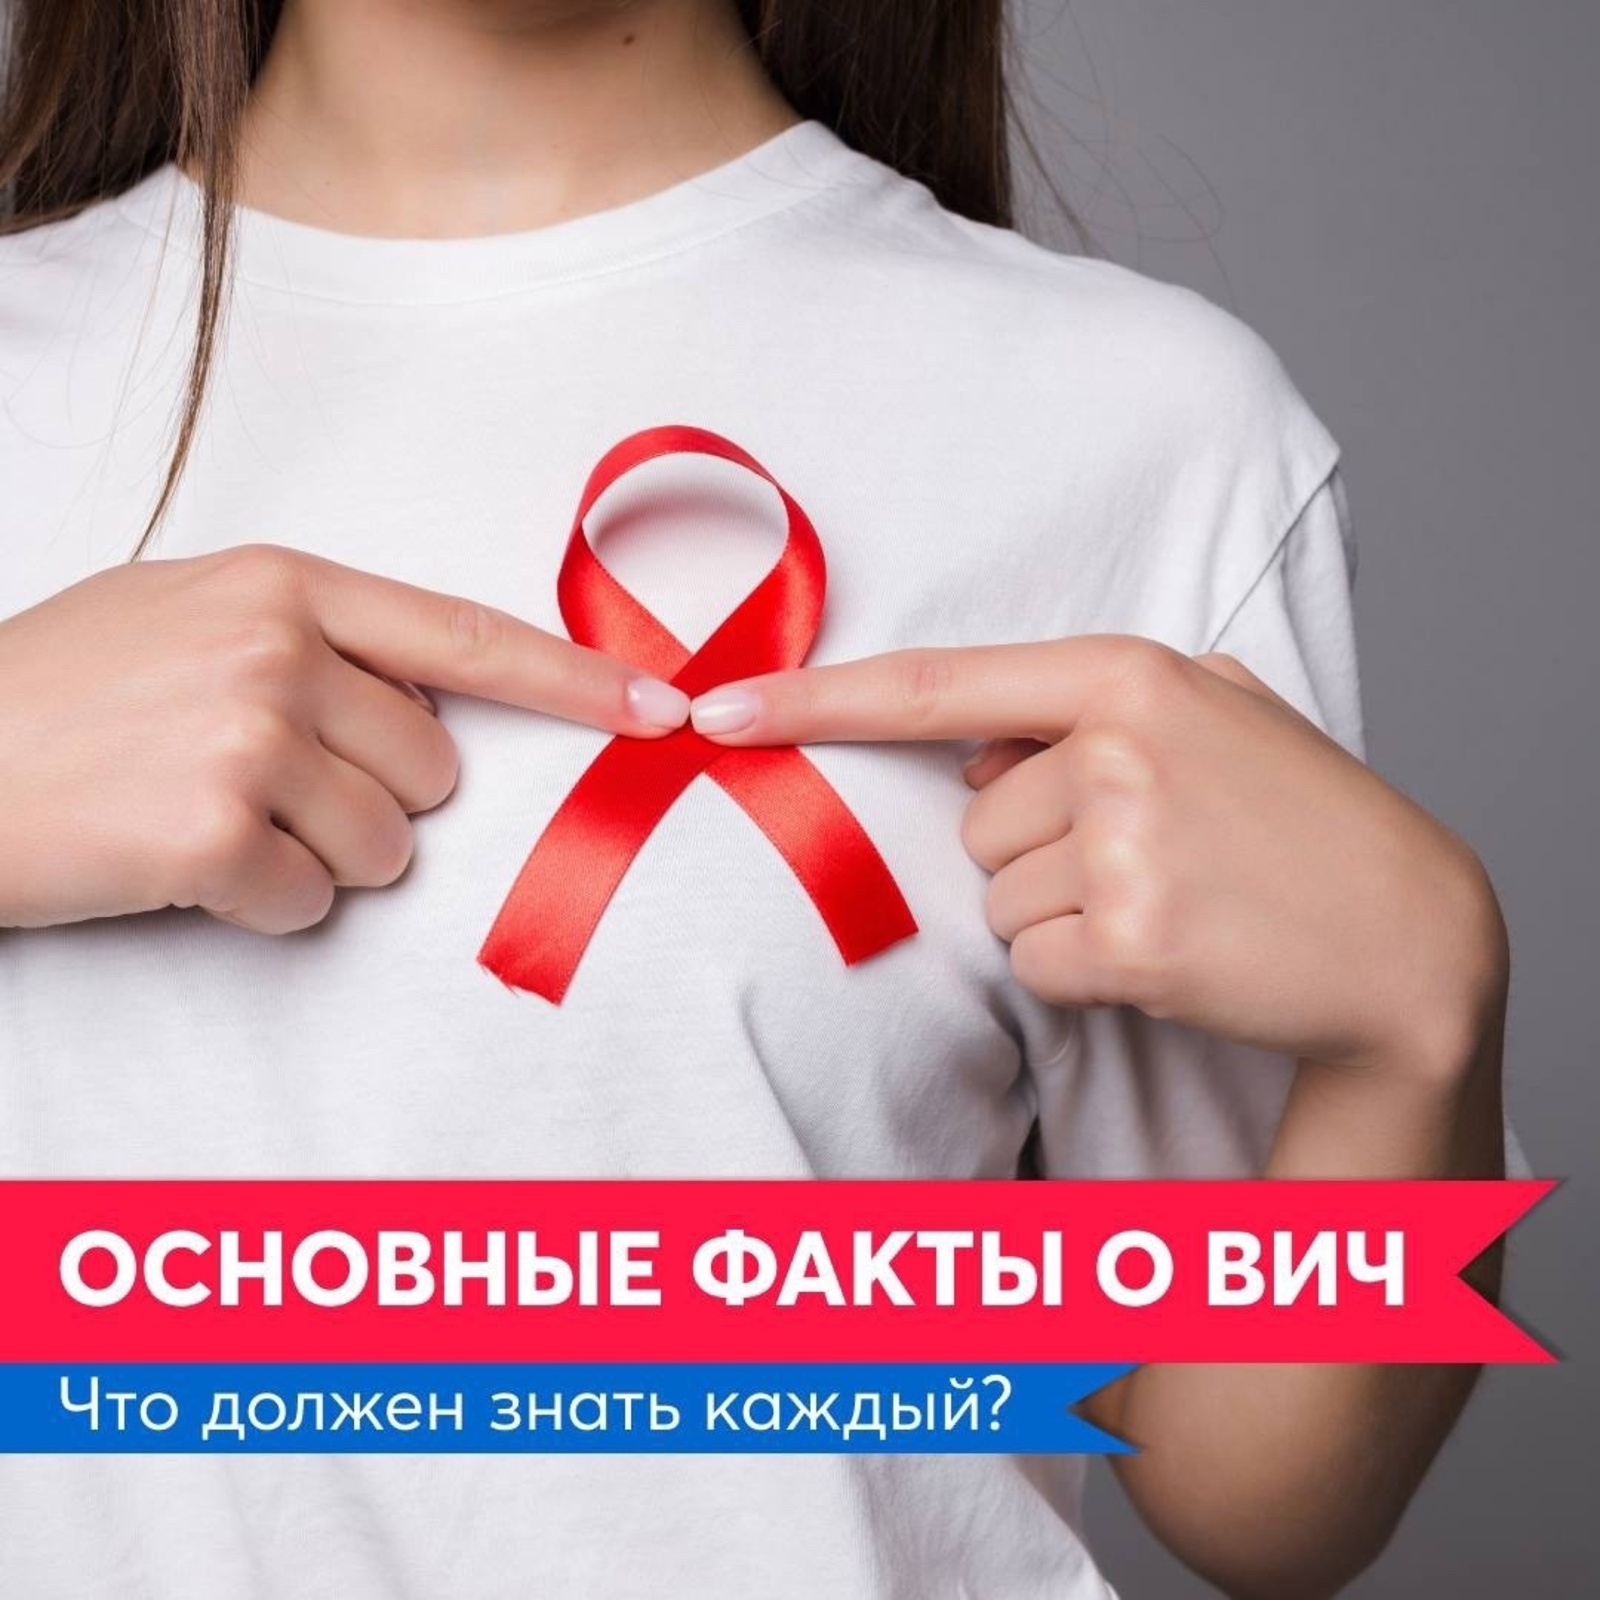 Основные факты о ВИЧ: что должен знать каждый